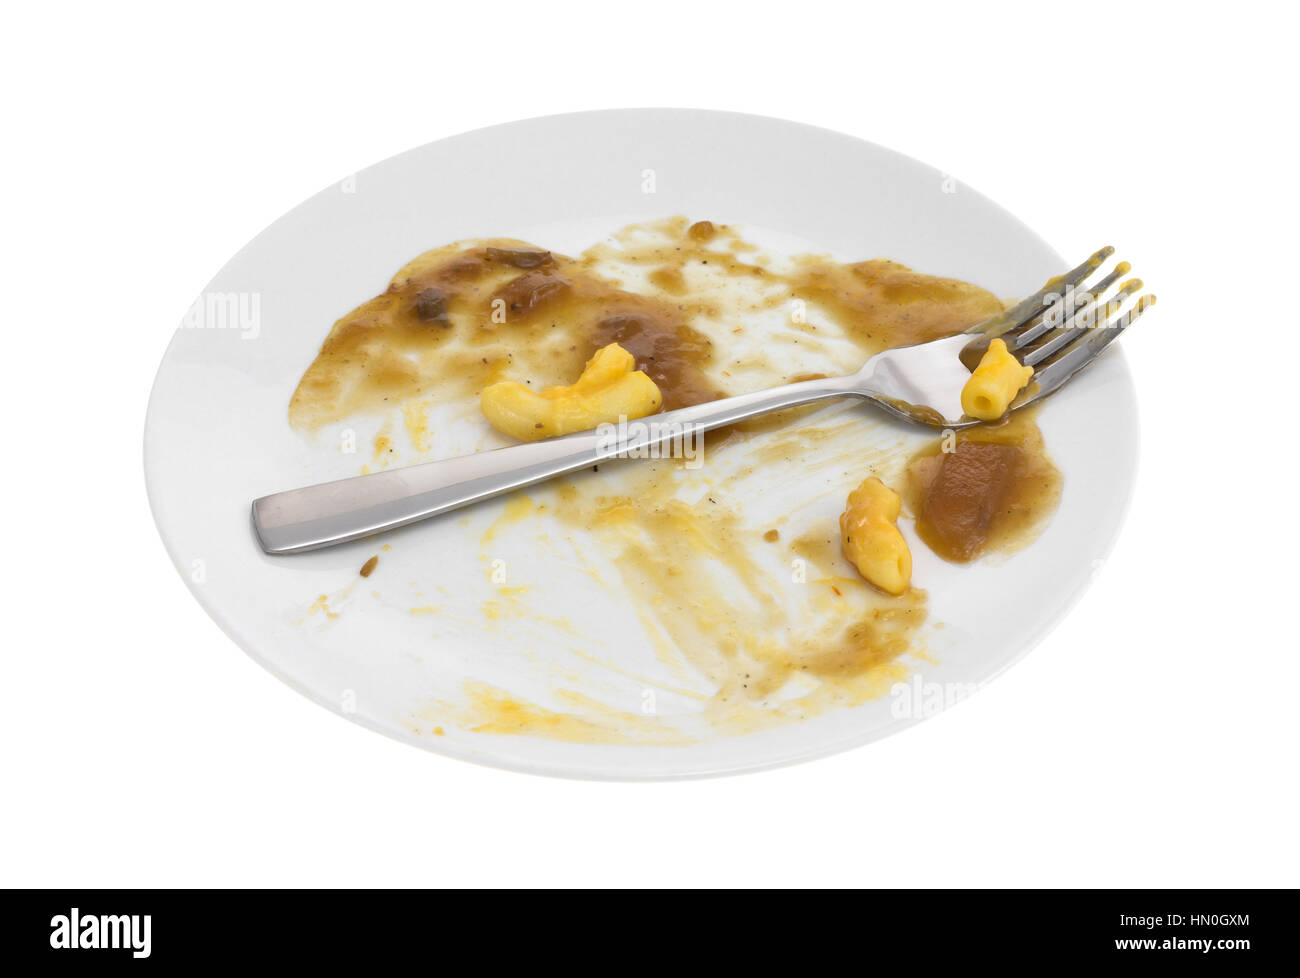 Eine Platte mit einer fertigen Mahlzeit Salisbury steak mit Soße und Makkaroni und Käse mit einer Gabel isoliert auf einem weißen Hintergrund. Stockfoto